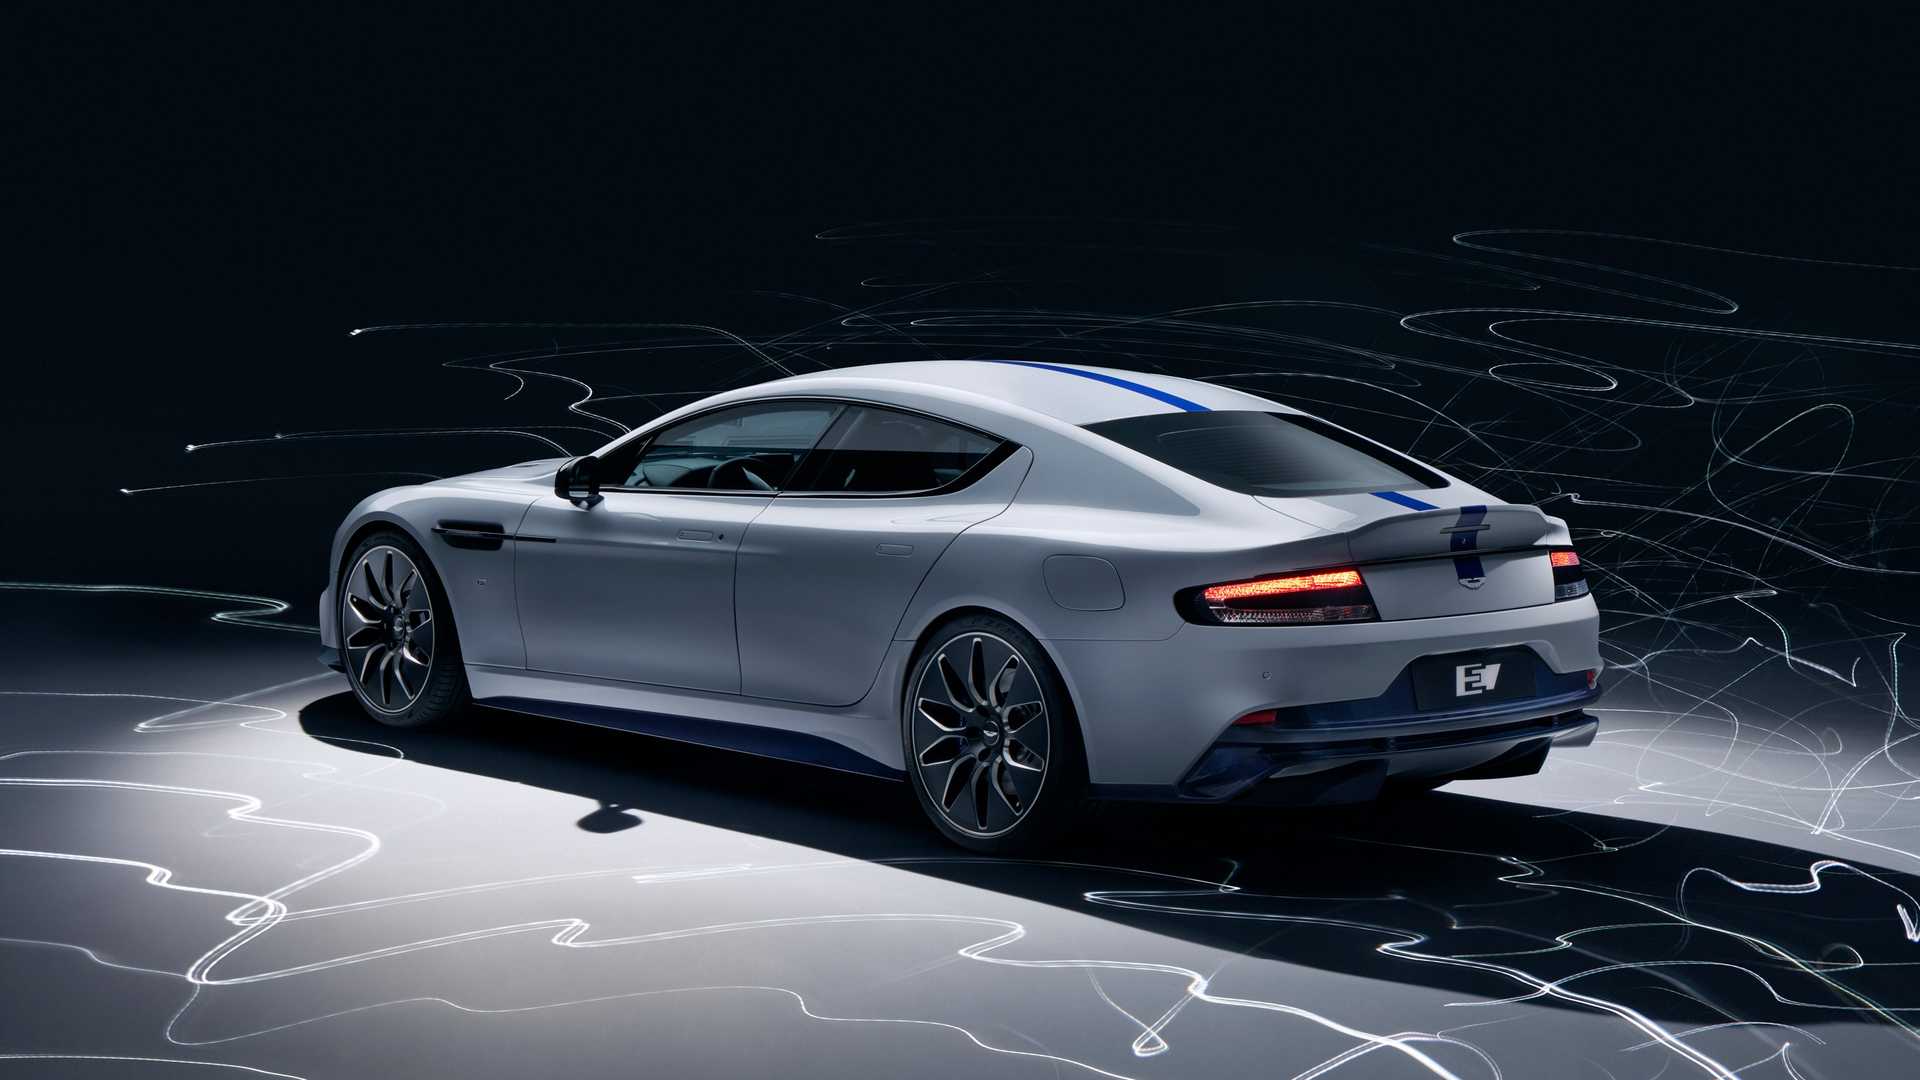 Aston Martin'in Elektrikli İlk Otomobili Rapide E, New York'ta Tanıtıldı